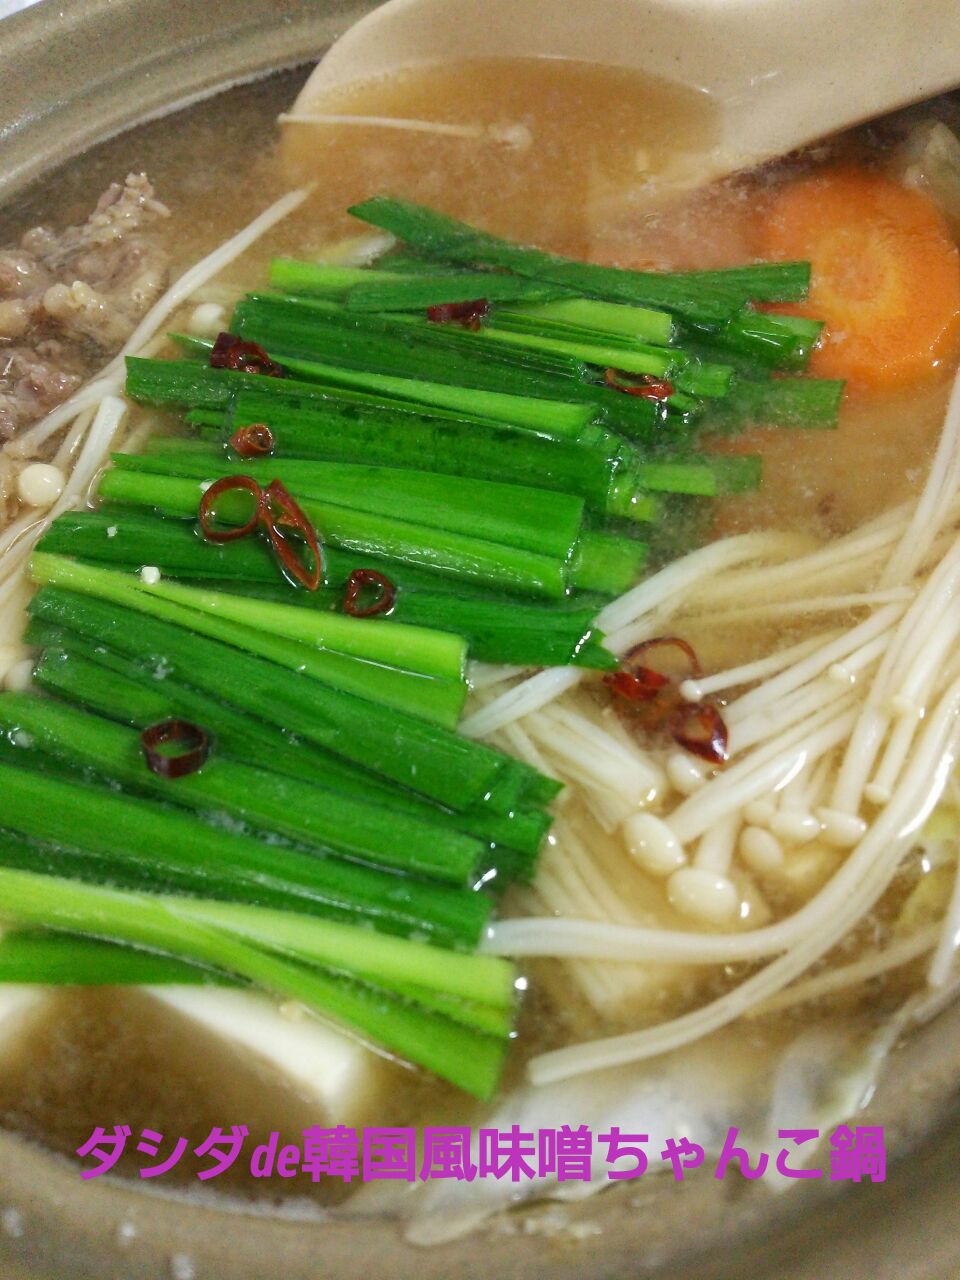 mari♡（もも୧⃛(๑⃙⃘◡̈๑⃙⃘)୨⃛）ちゃんの手作り♡一人鍋〜。ダシダ使用で韓国風味噌ちゃんこ鍋♡二人鍋にしました。